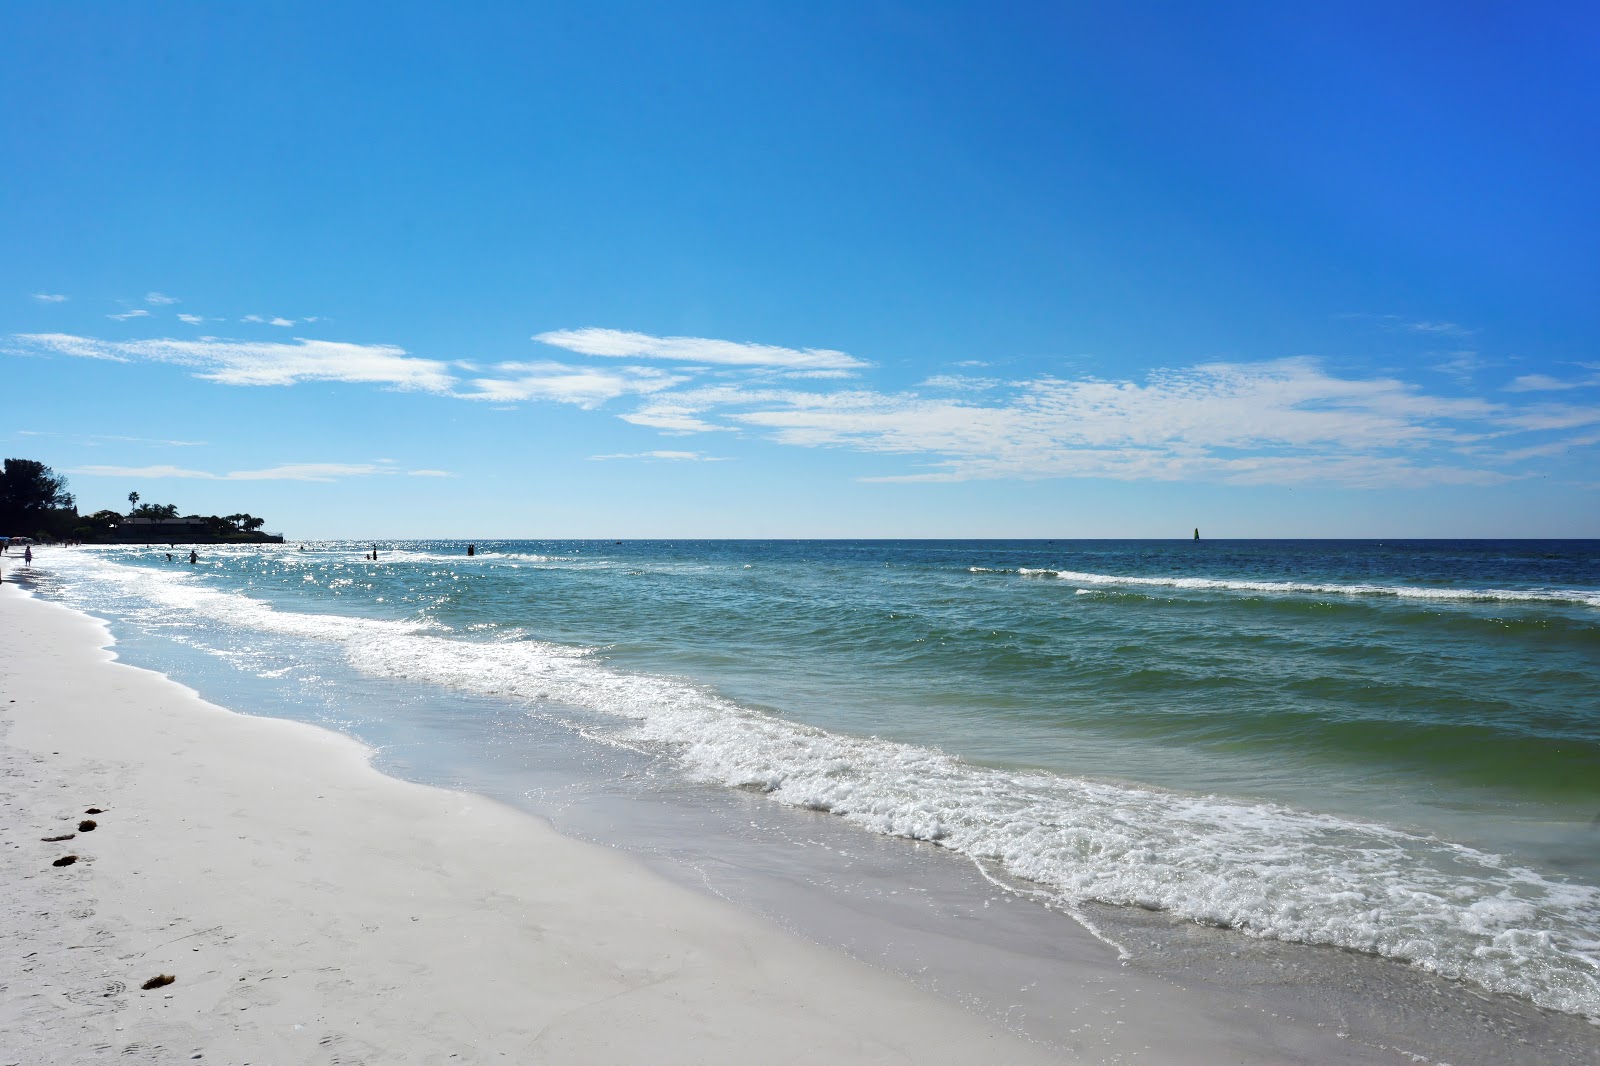 Photo de Crescent beach - endroit populaire parmi les connaisseurs de la détente